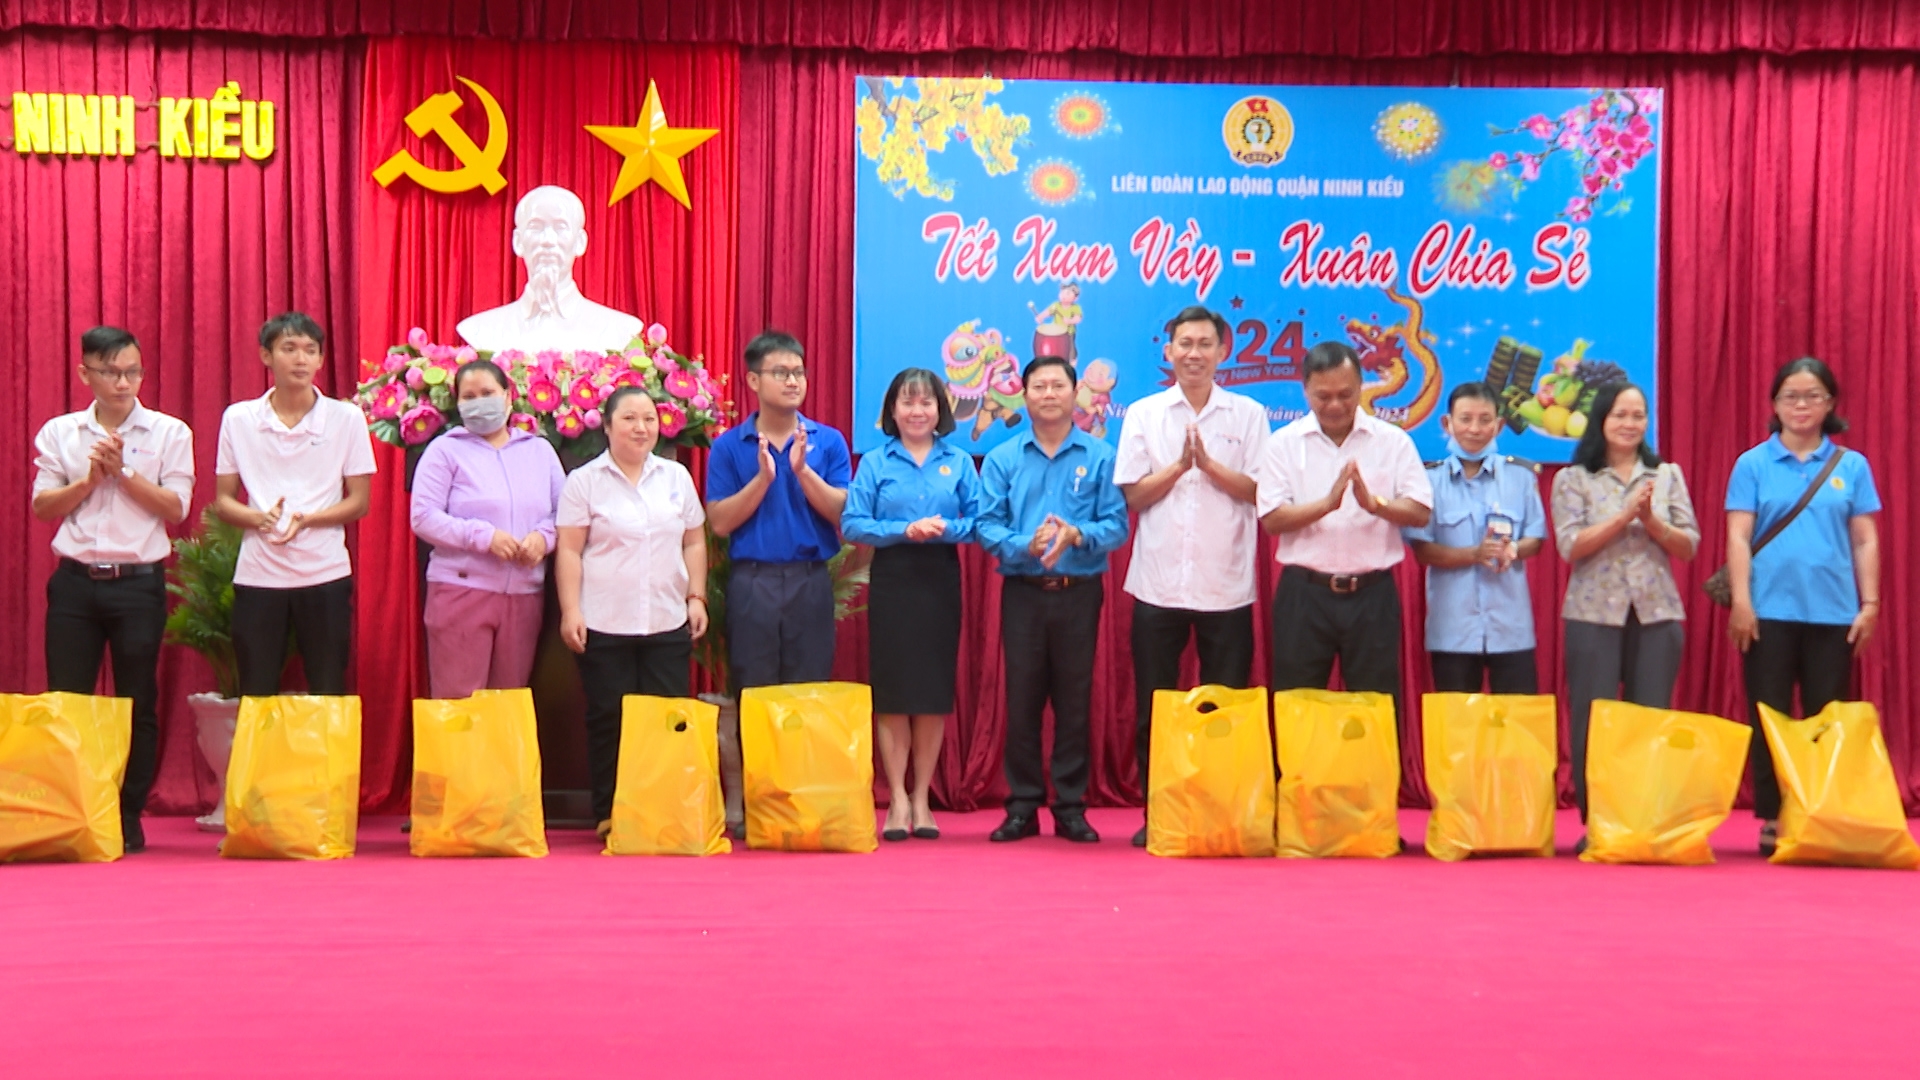 Đại diện lãnh đạo quận Ninh Kiều tawngn quà tết cho đoàn viên, người lao động khó khăn trên địa bàn 